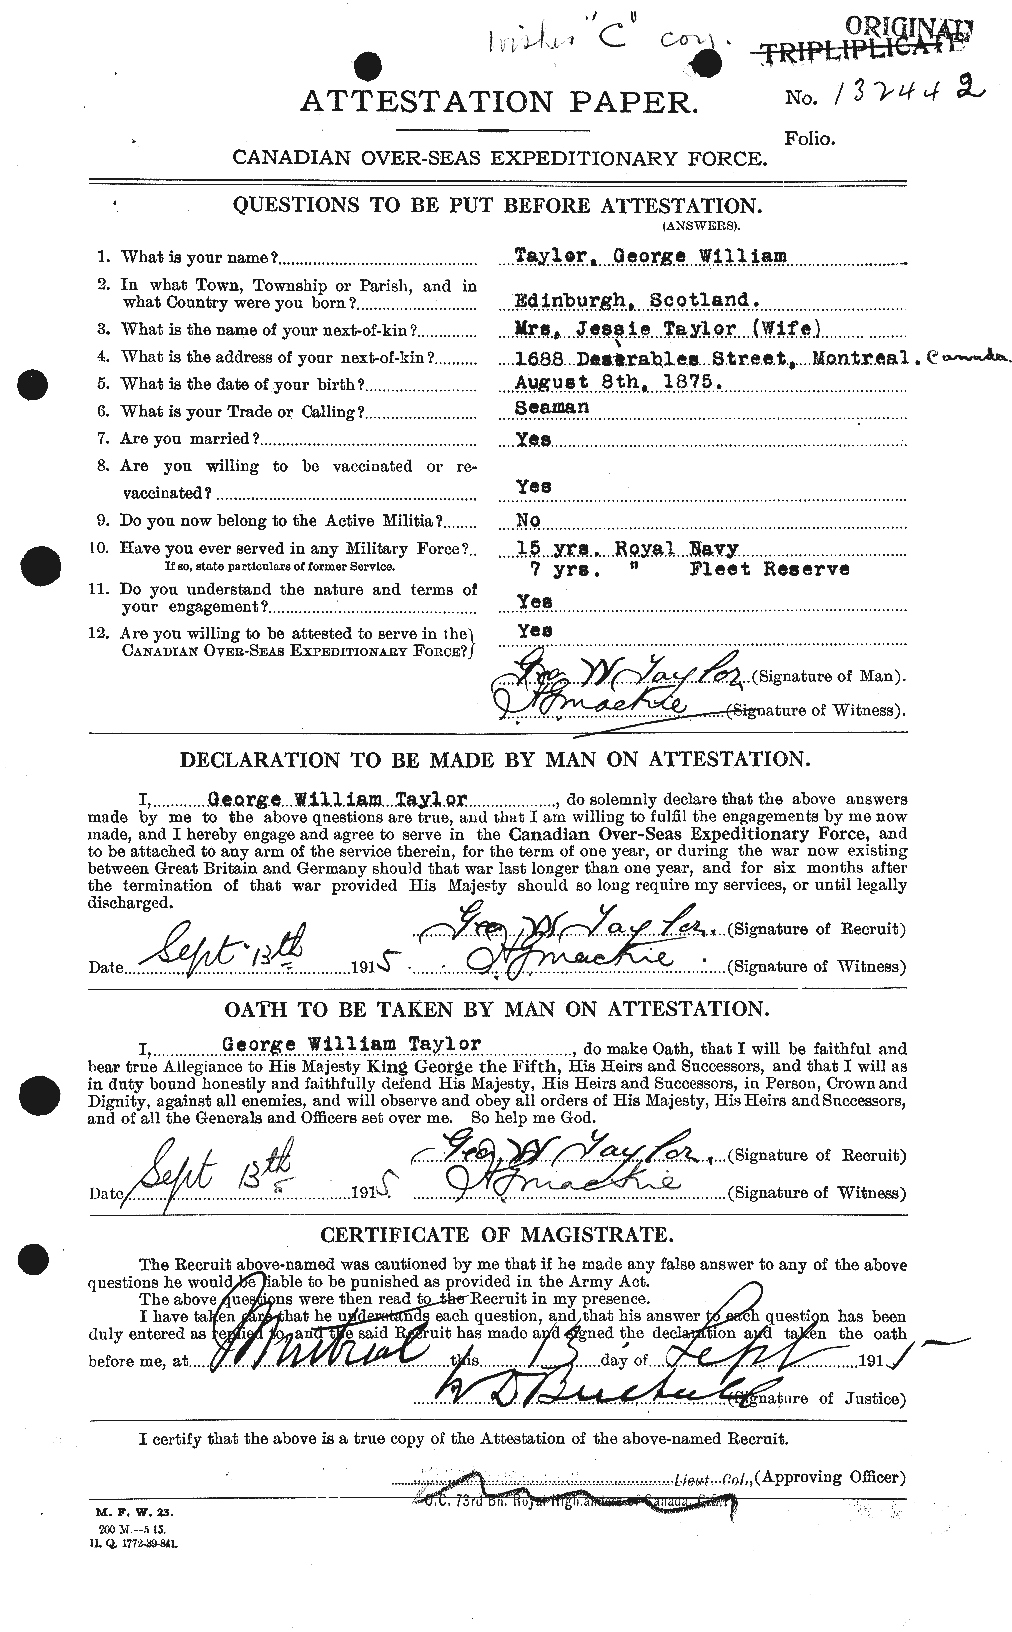 Dossiers du Personnel de la Première Guerre mondiale - CEC 626370a